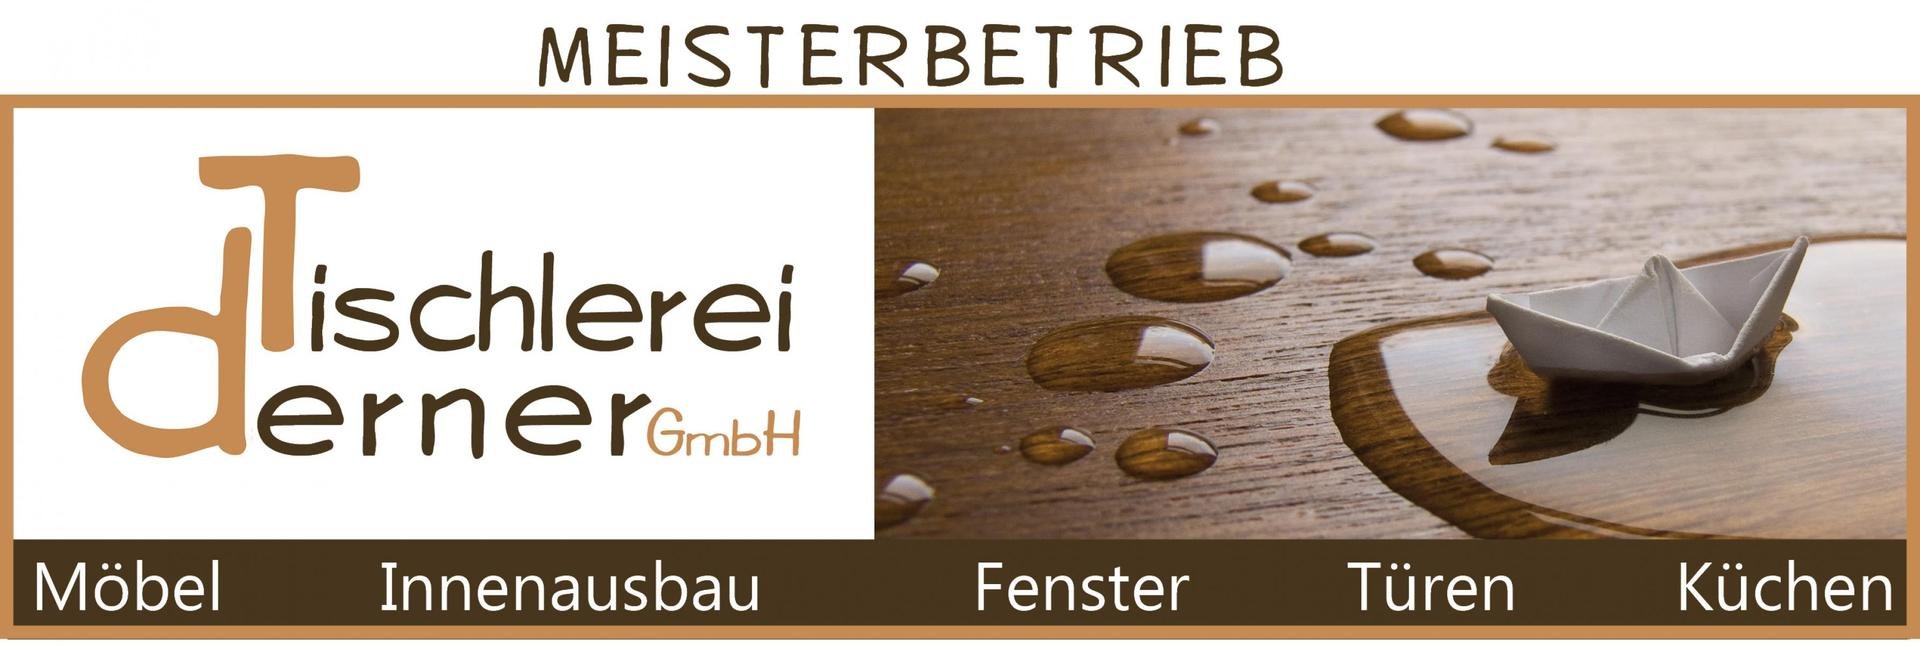 Tischlerei Derner GmbH Logo